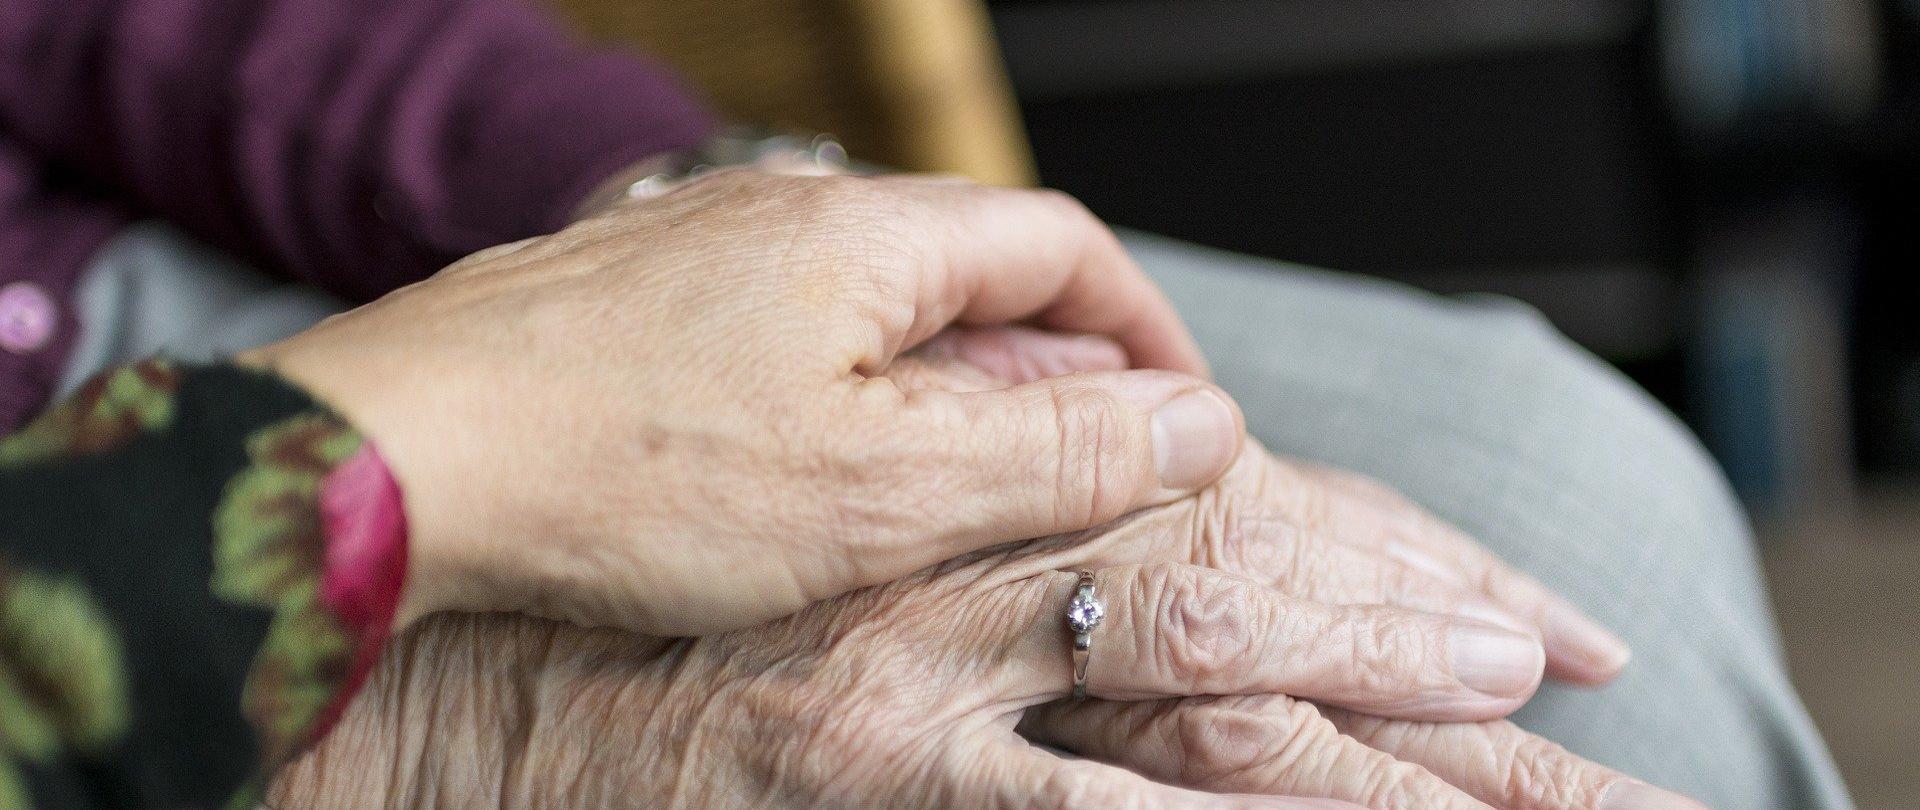 dłonie seniorki, przykryte dłonią młodszej osoby, symbol wsparcia i pomocy